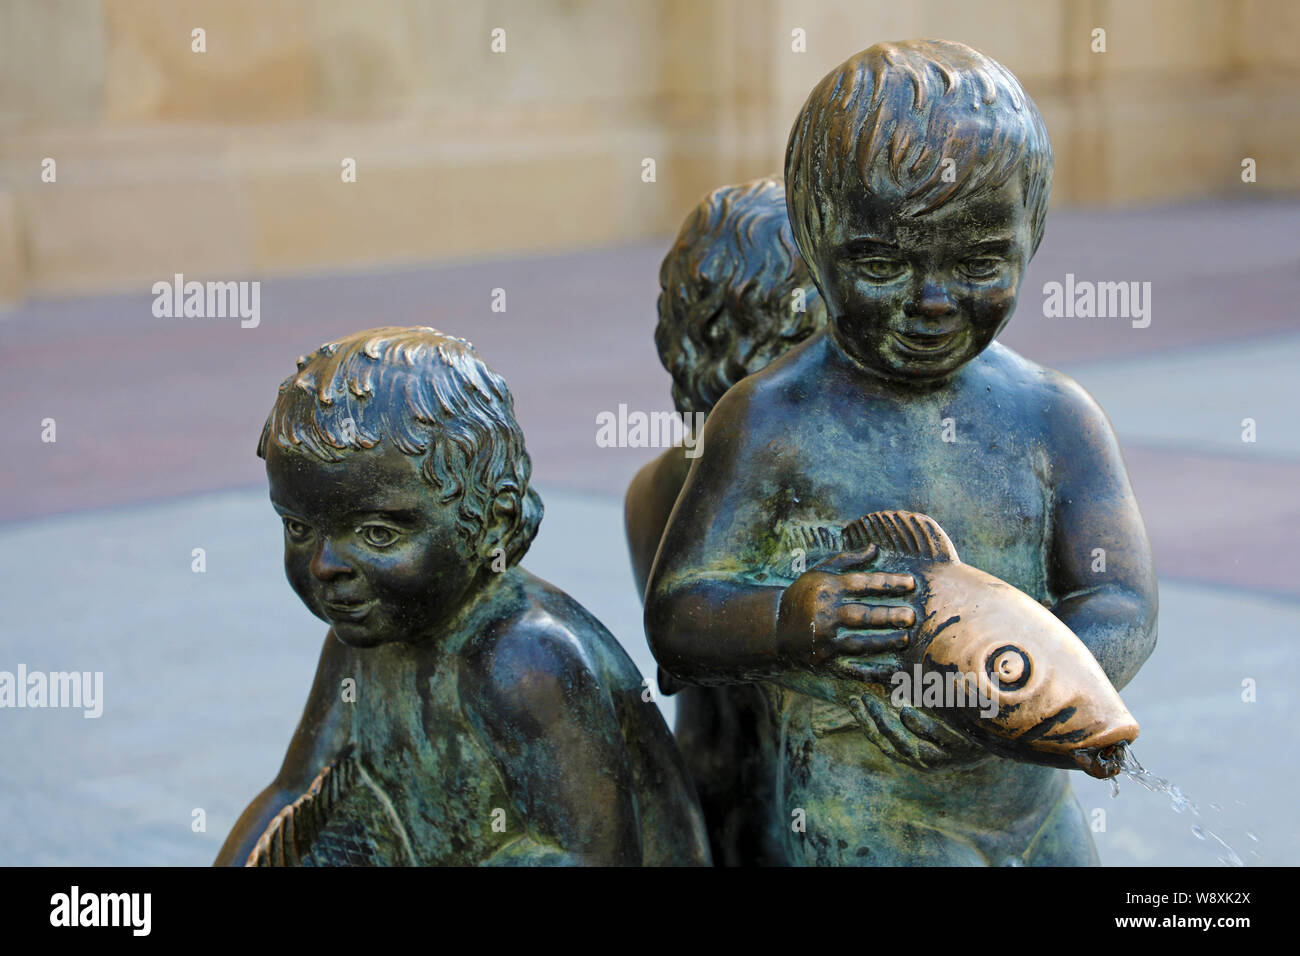 Dettaglio di una fontana di bronzo in Plaza del Pilar square, Zaragozza, Spagna Foto Stock